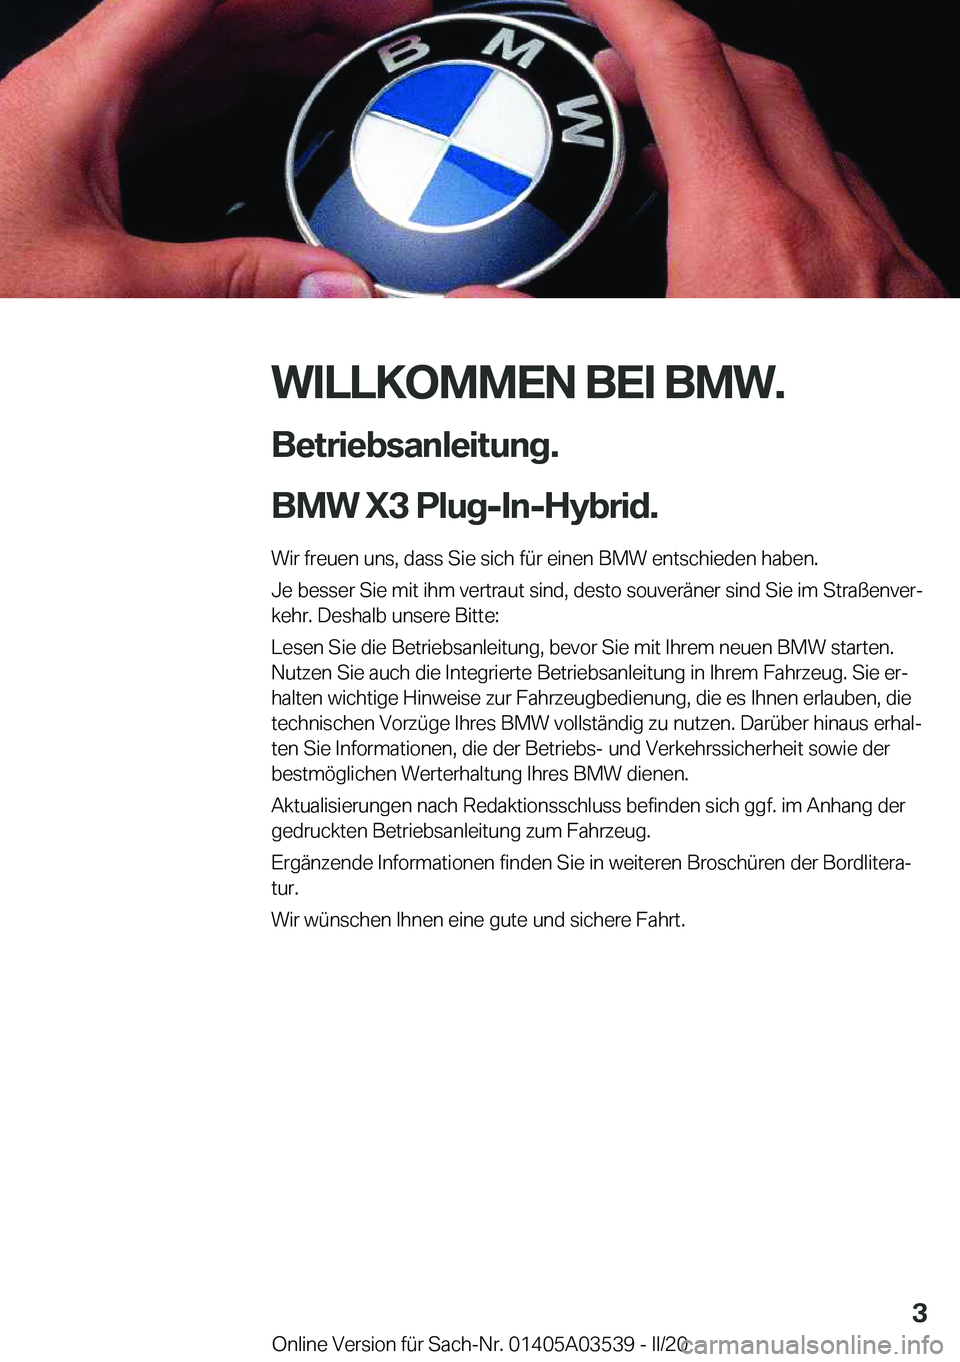 BMW X3 PLUG IN HYBRID 2020  Betriebsanleitungen (in German) �W�I�L�L�K�O�M�M�E�N��B�E�I��B�M�W�.�B�e�t�r�i�e�b�s�a�n�l�e�i�t�u�n�g�.
�B�M�W��X�3��P�l�u�g�-�I�n�-�H�y�b�r�i�d�. �W�i�r��f�r�e�u�e�n��u�n�s�,��d�a�s�s��S�i�e��s�i�c�h��f�